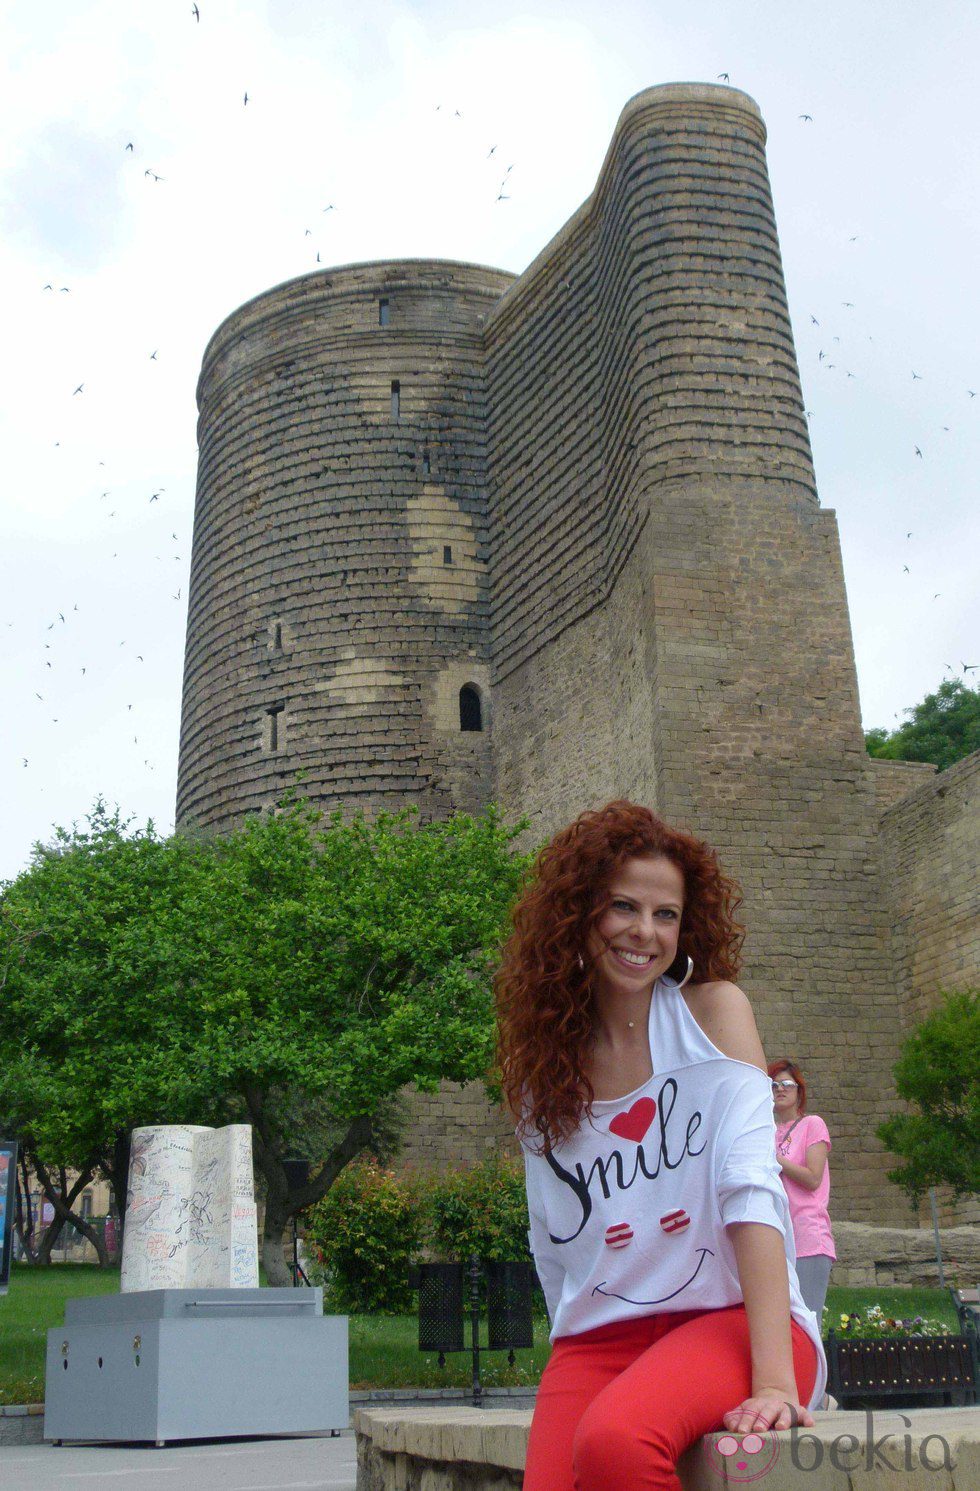 Pastora Soler en la Torre de la Dama de Baku, ciudad de Eurovisión 2012